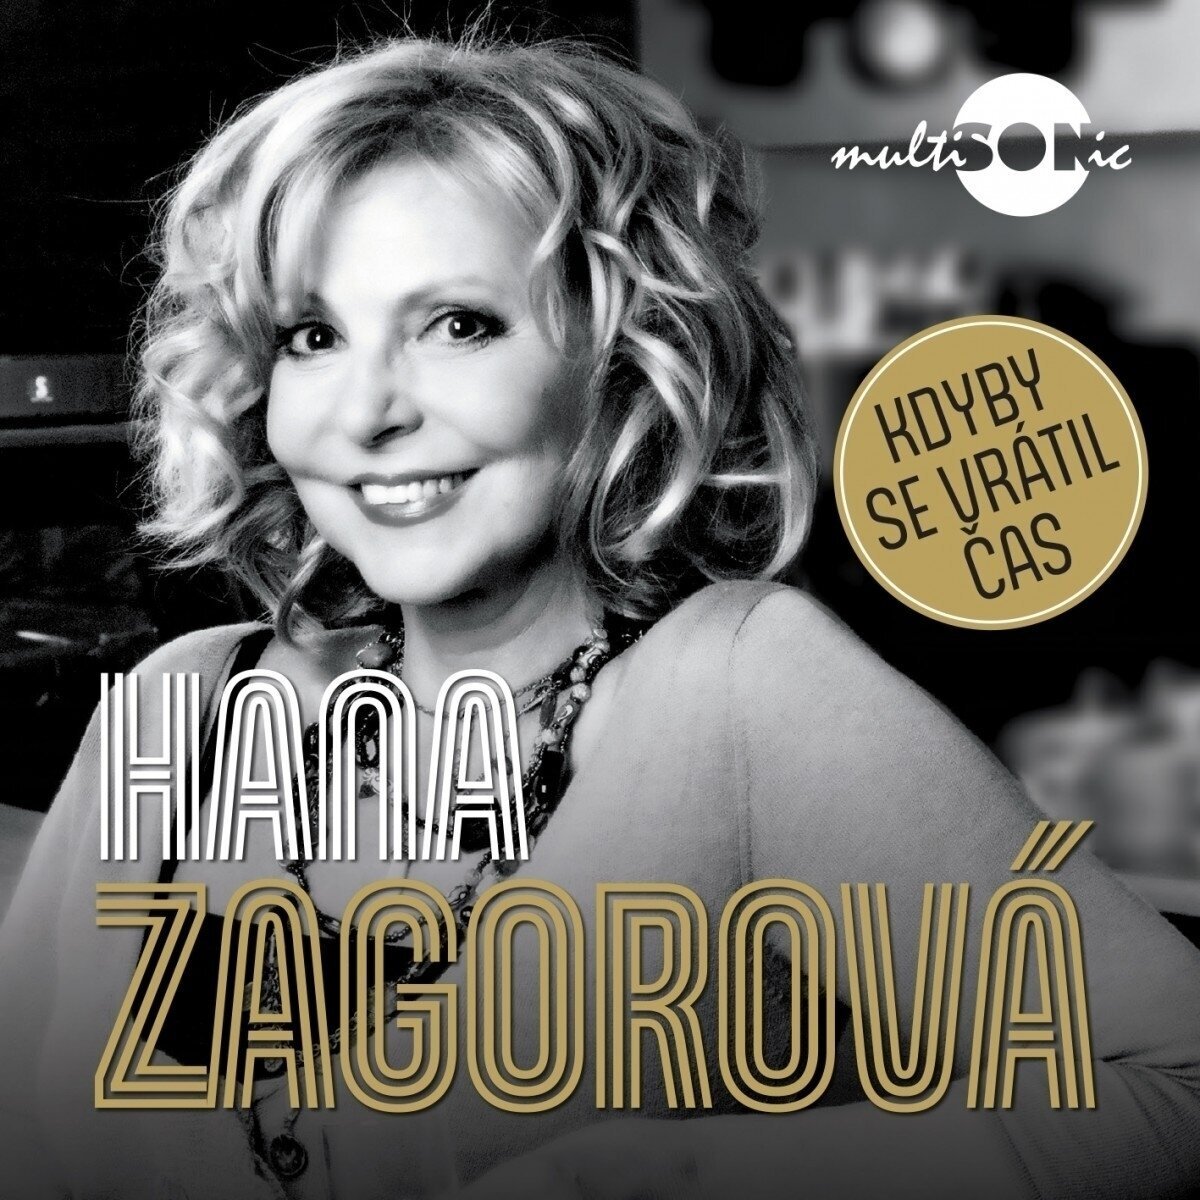 Schallplatte Hana Zagorová - Kdyby se vrátil čas (LP)